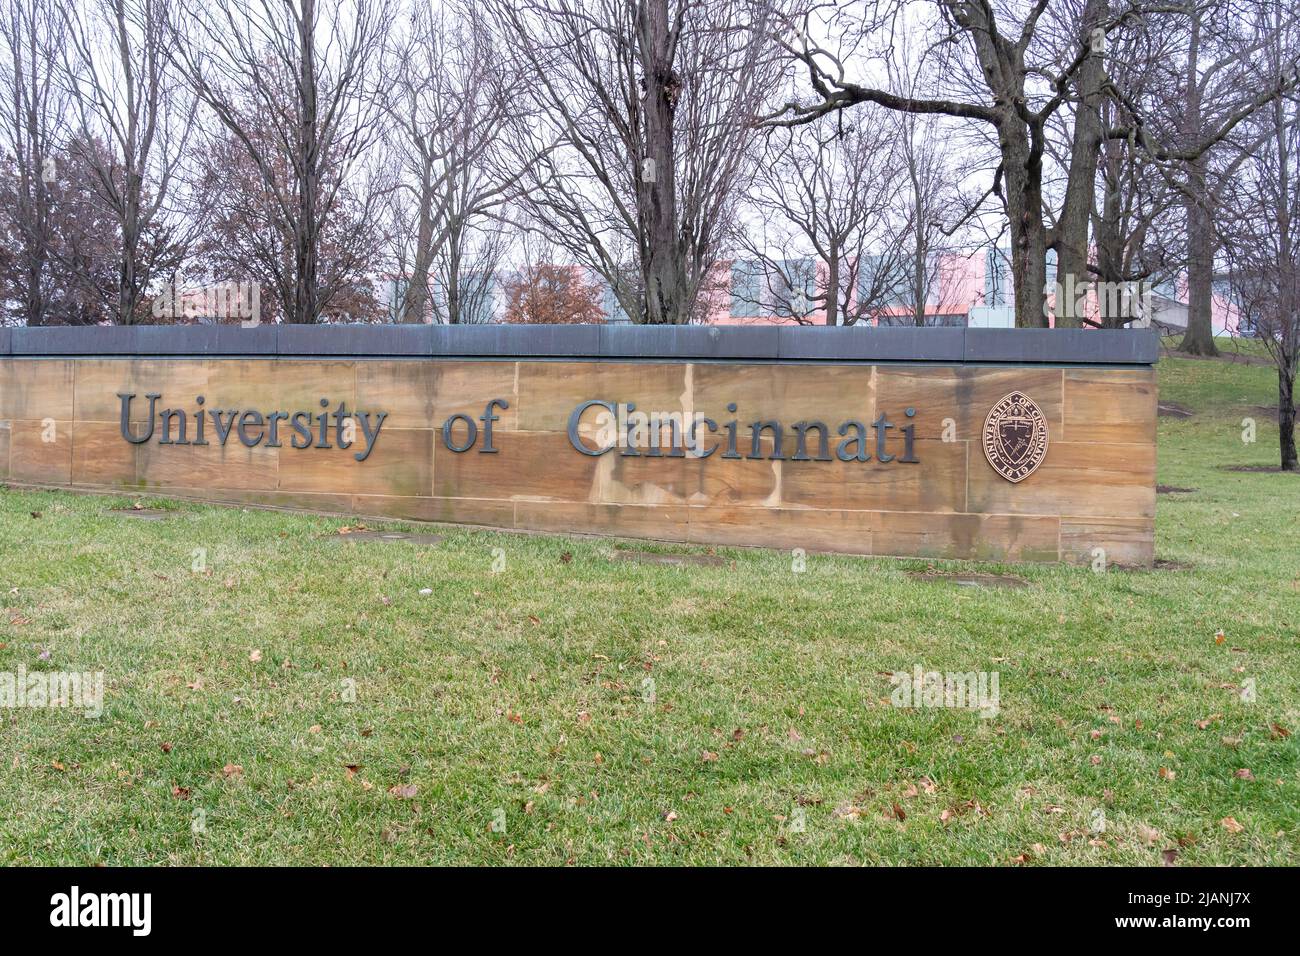 Cincinnati, Ohio, USA - December 28, 2021: University of Cincinnati sign is shown. Stock Photo